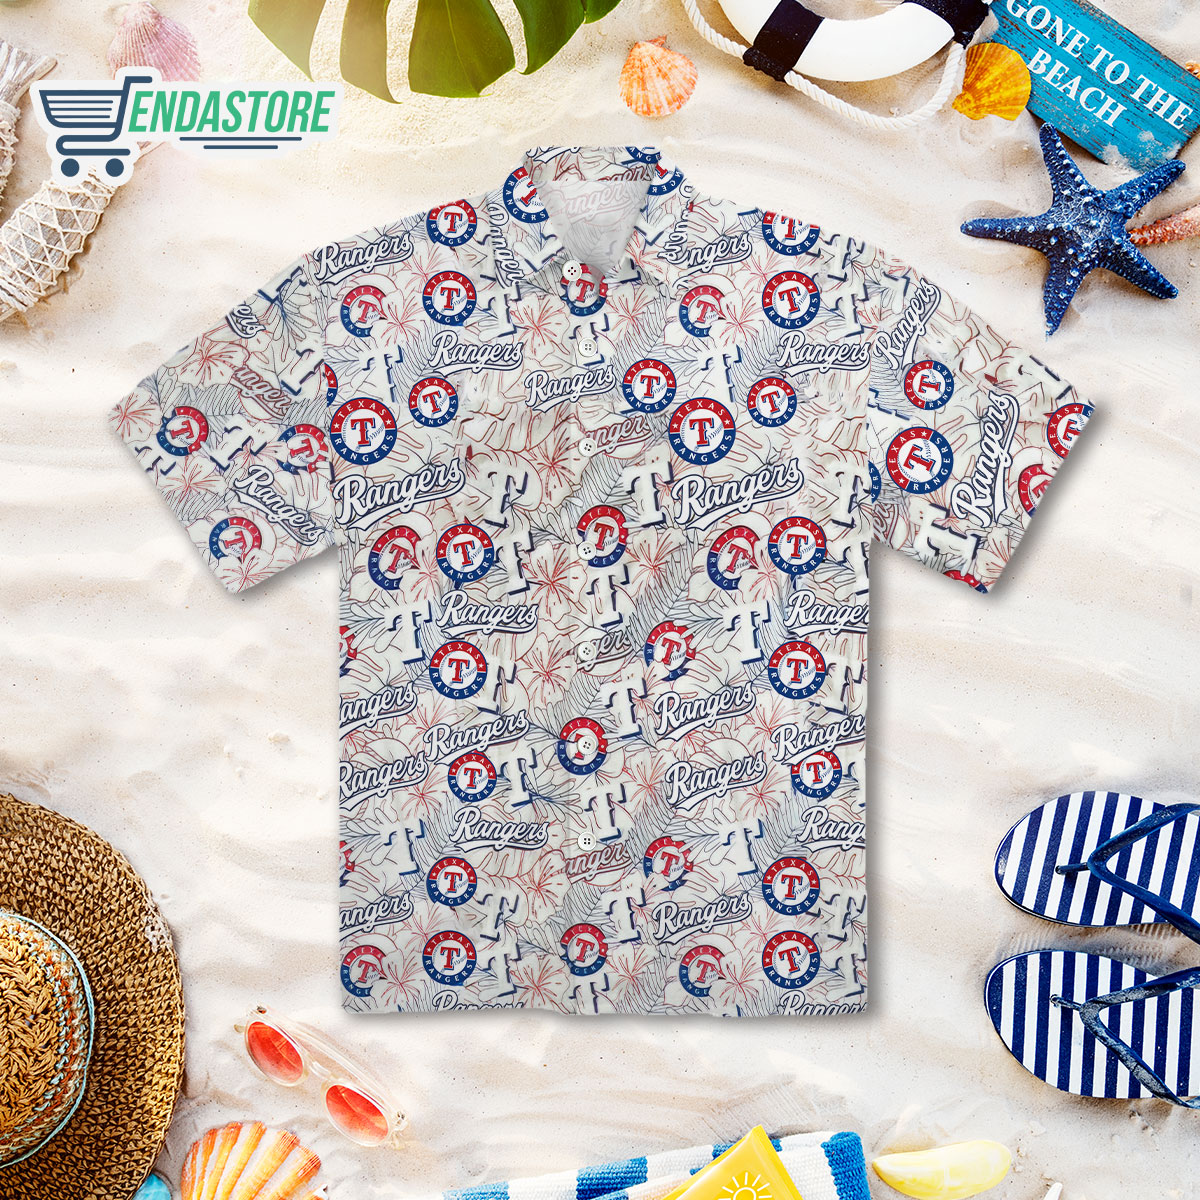 Endastore Texas Rangers Hawaiian Shirt Giveaway 2023